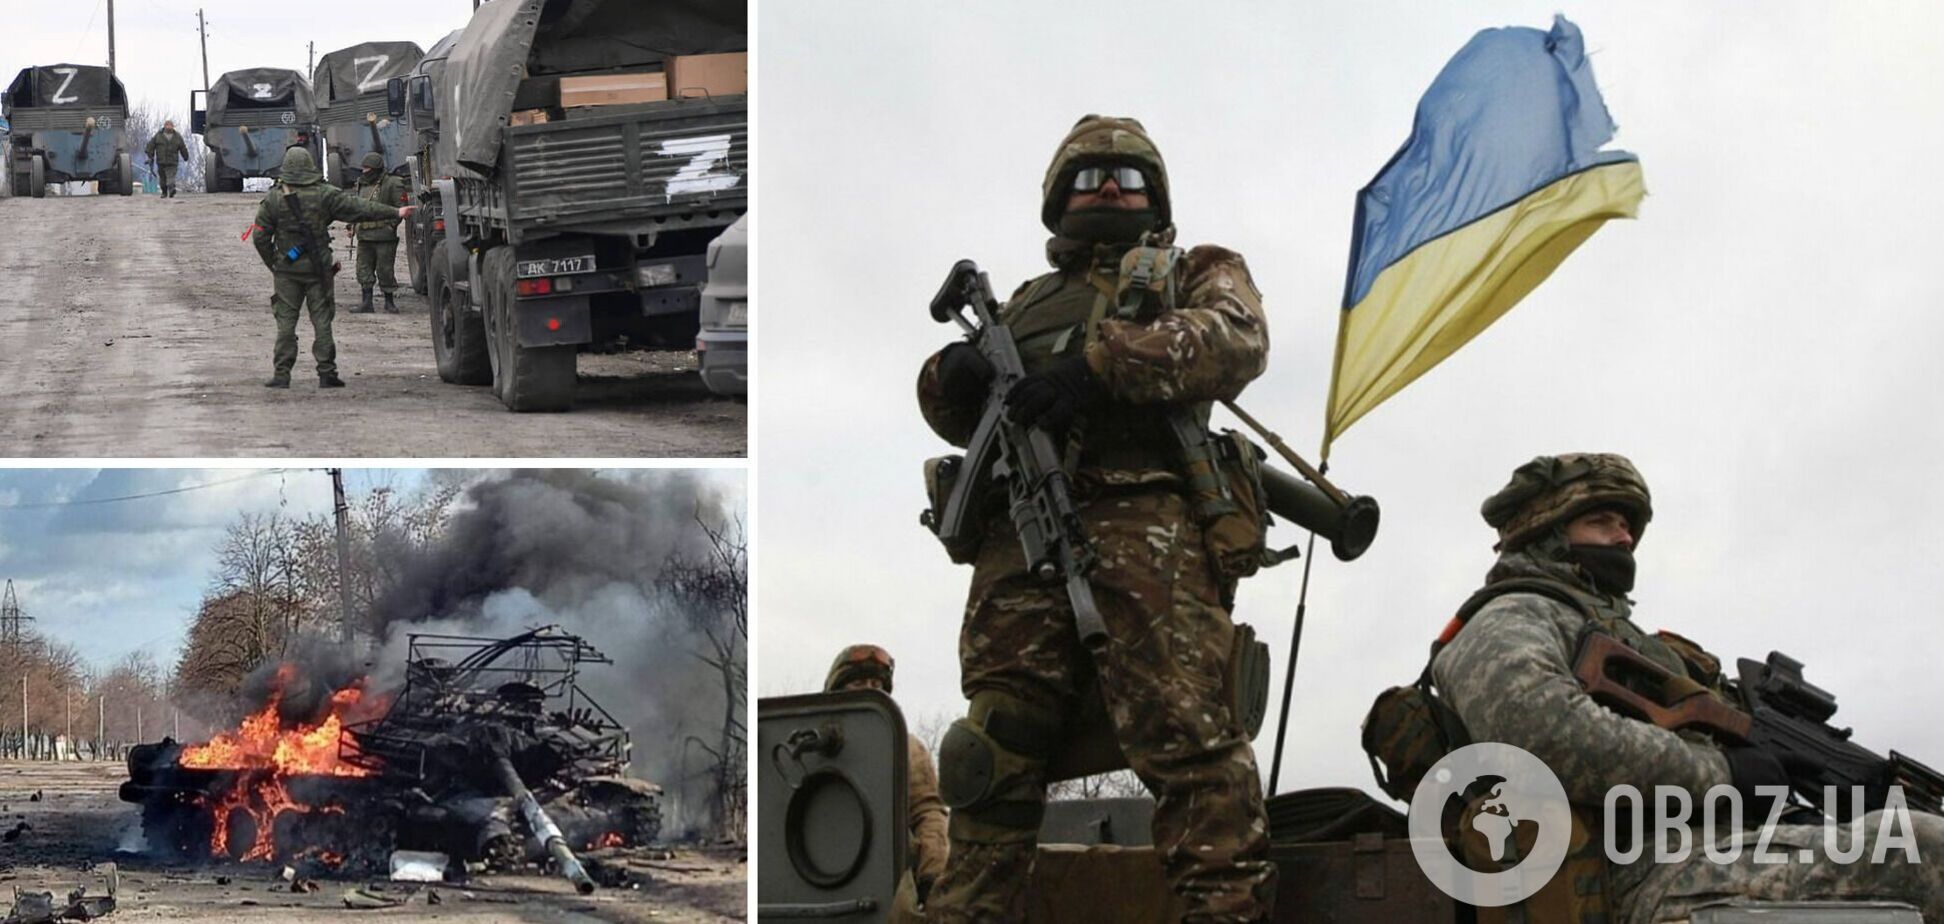 'Домой – и к бл*дям!' Оккупанты признались, что расстреливают своих солдат и хотят быстрее сбежать из Украины. Аудио